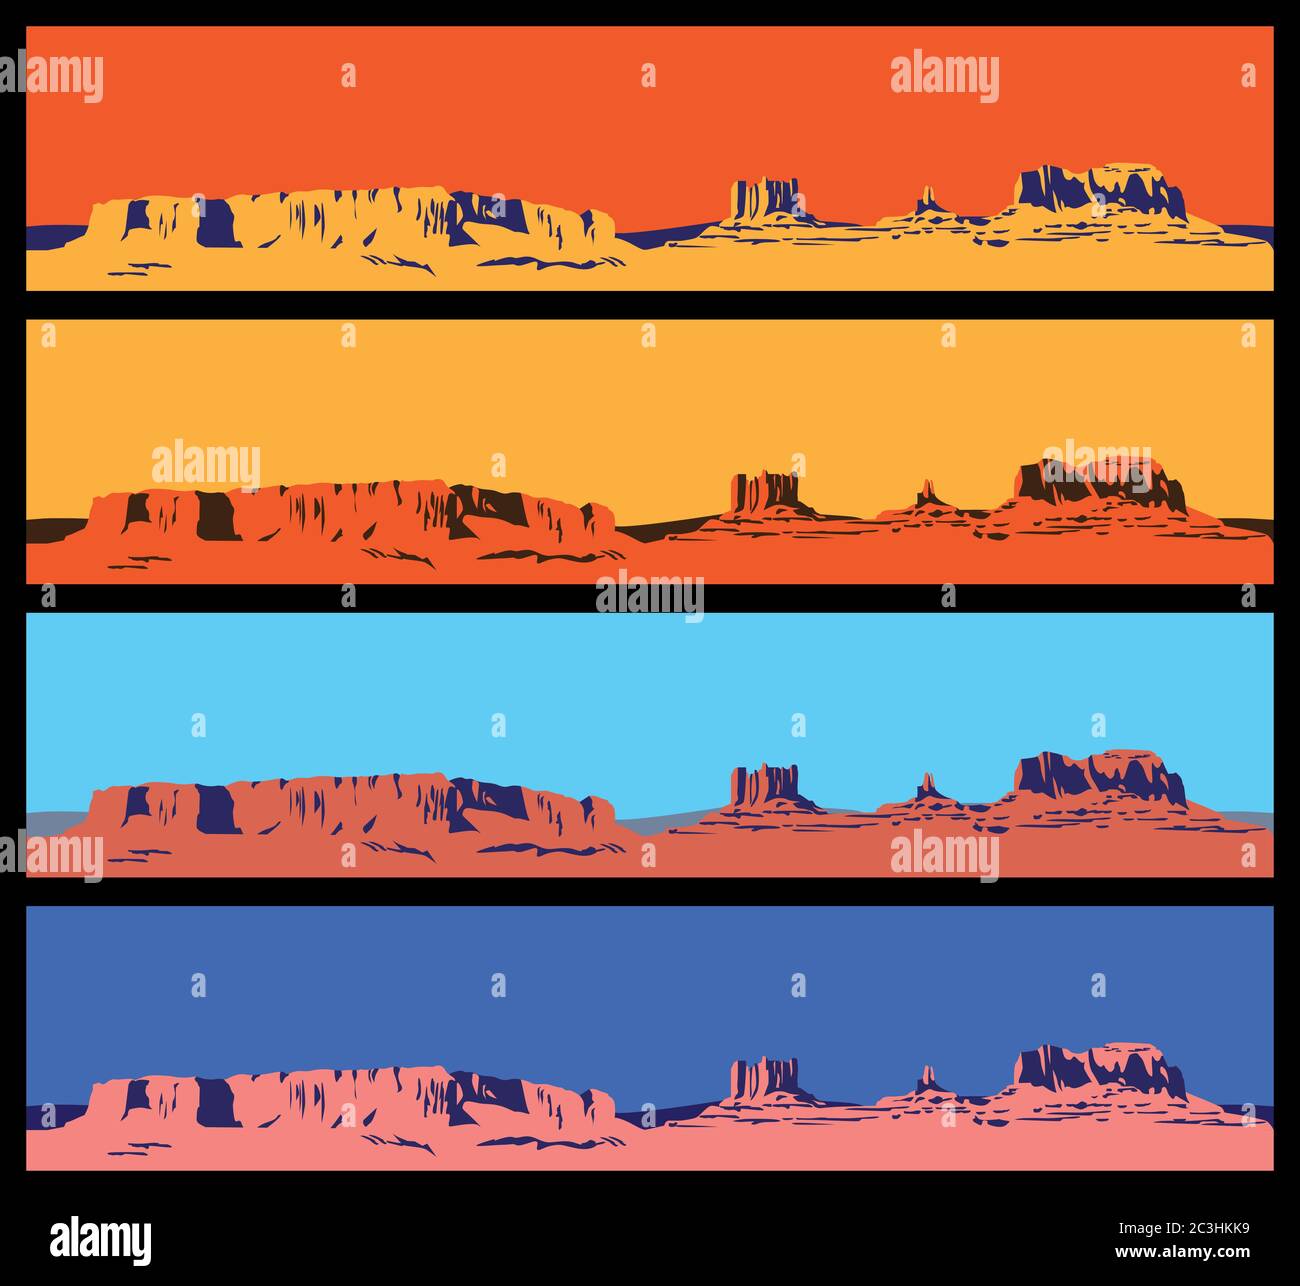 Stilisierte Vektorgrafik zum Thema Wilder Westen, der große Canyon, Berge und Wüsten. Nahtlos horizontal, wenn nötig Stock Vektor